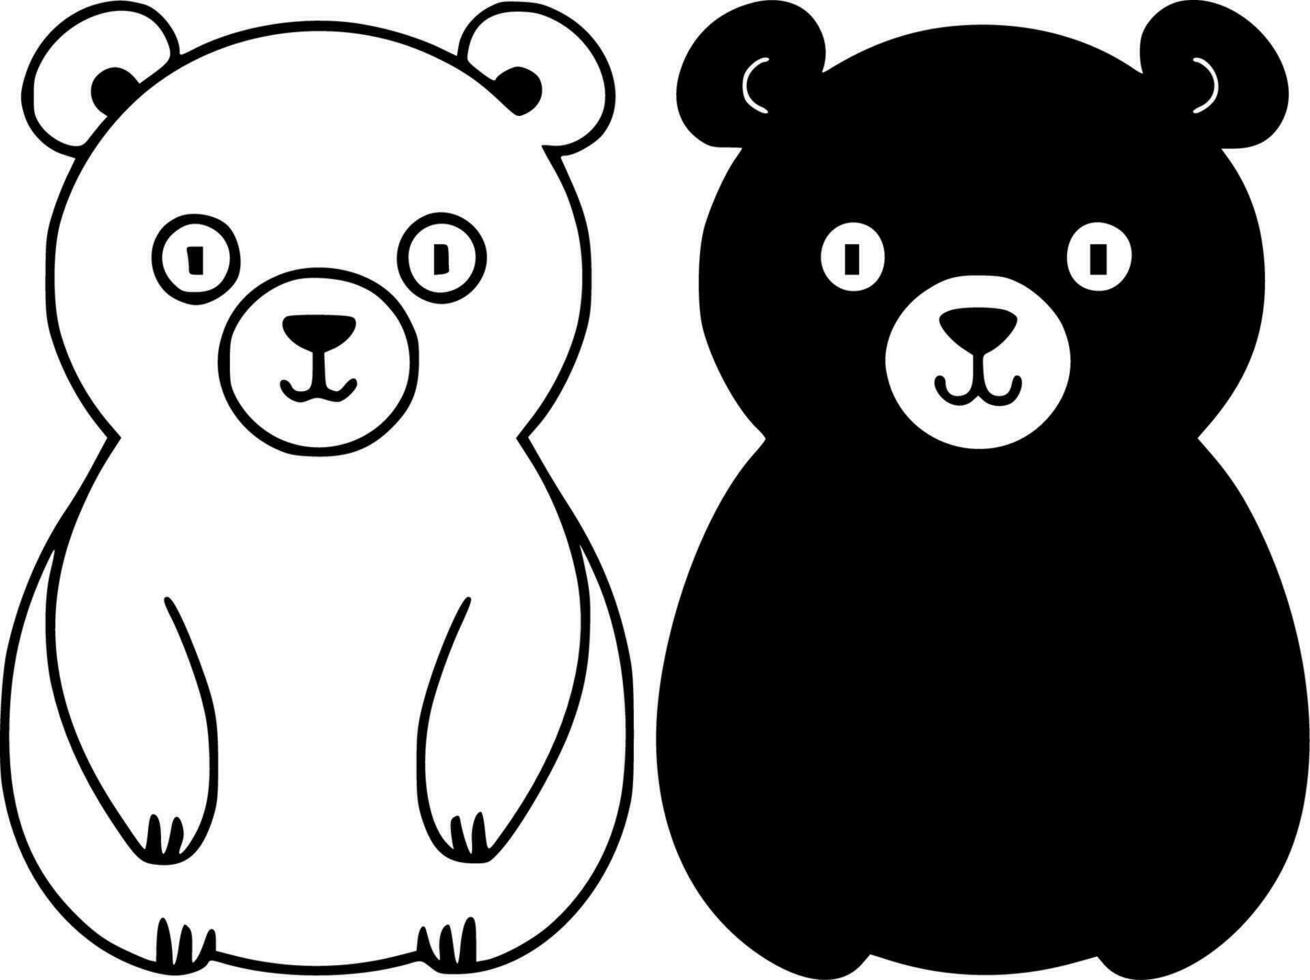 ursos - Alto qualidade vetor logotipo - vetor ilustração ideal para camiseta gráfico